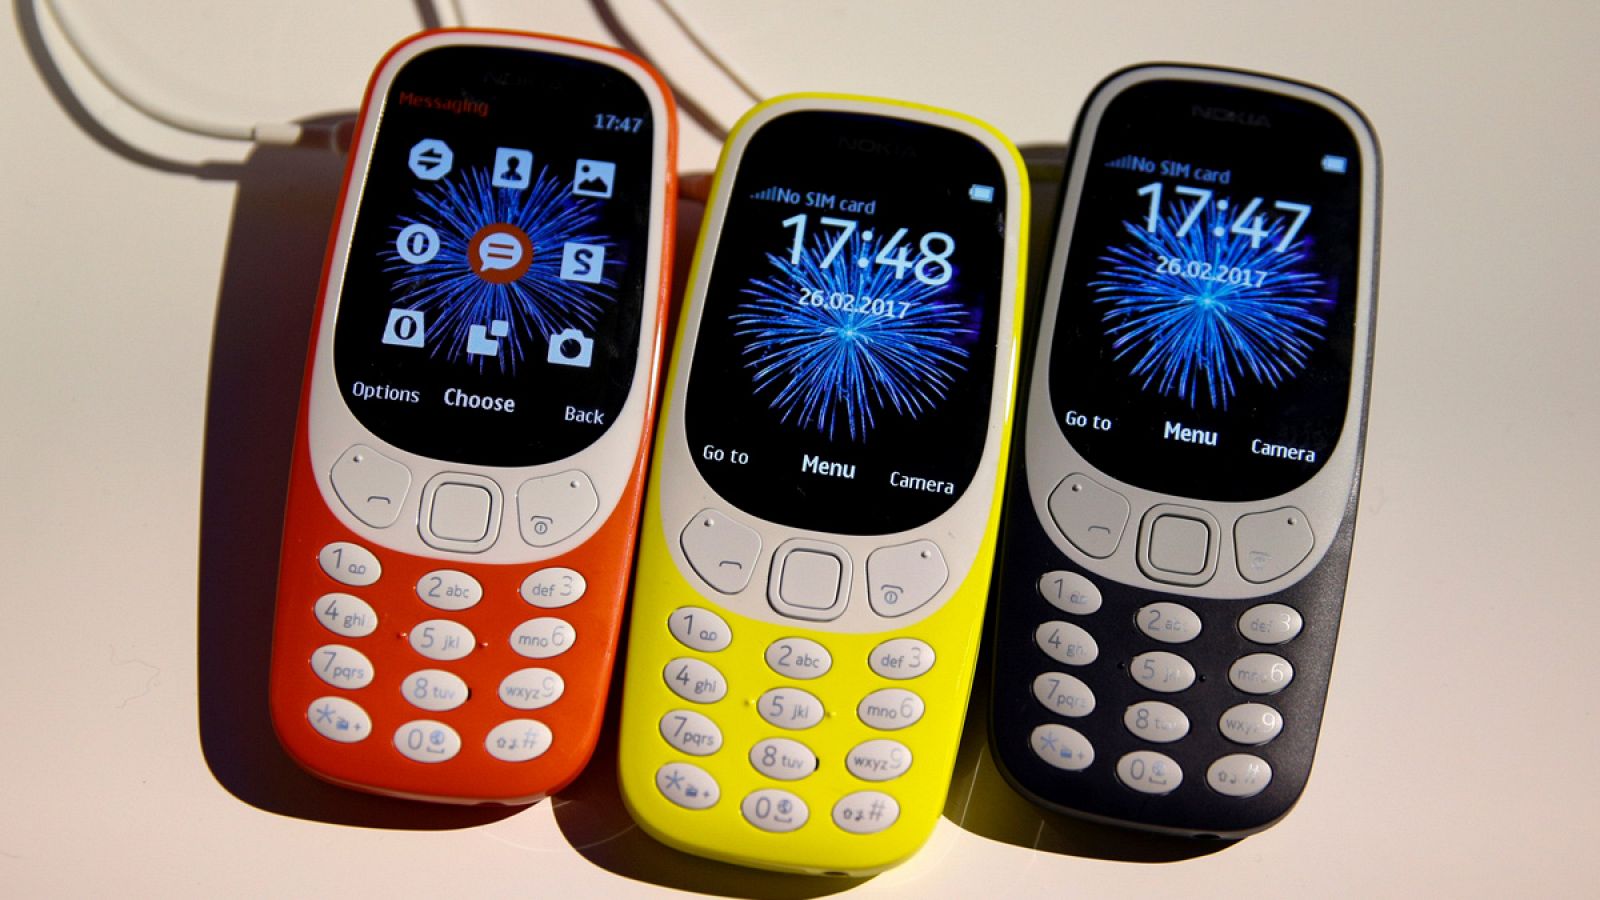 Más delgado que su antecesor, el Nokia 3310 mantiene la esencia del diseño original.